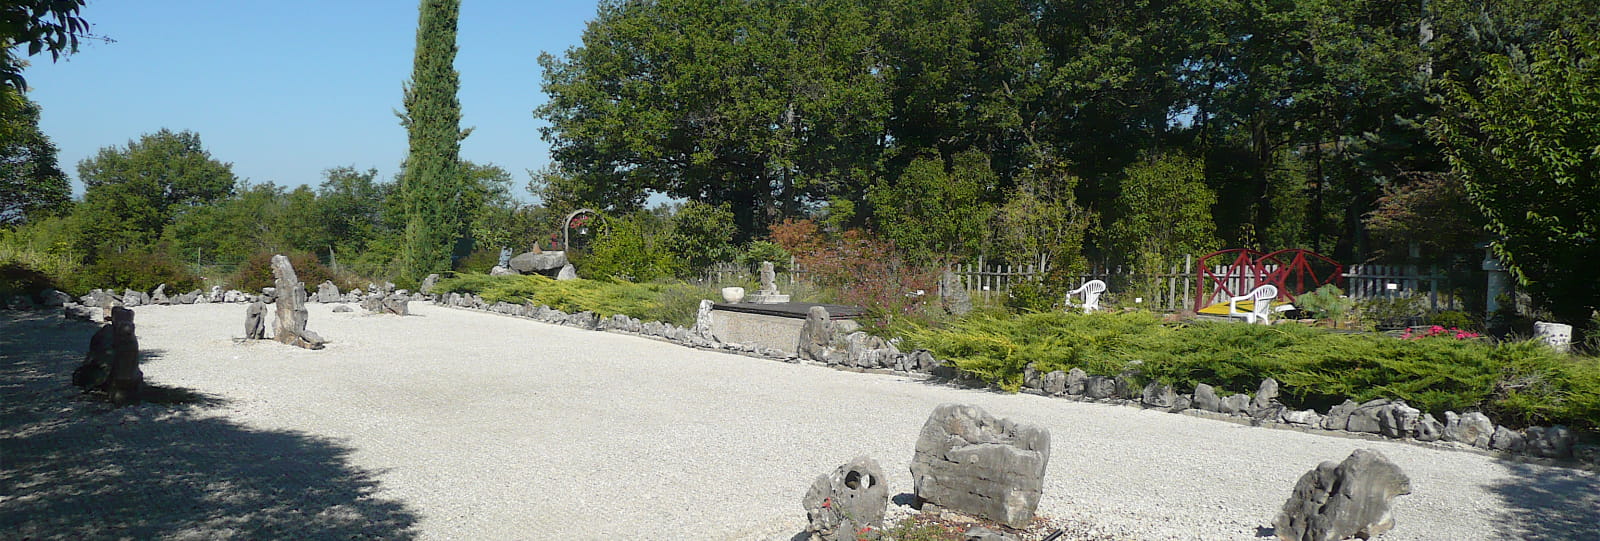 Le Jardin Zen de Montvendre